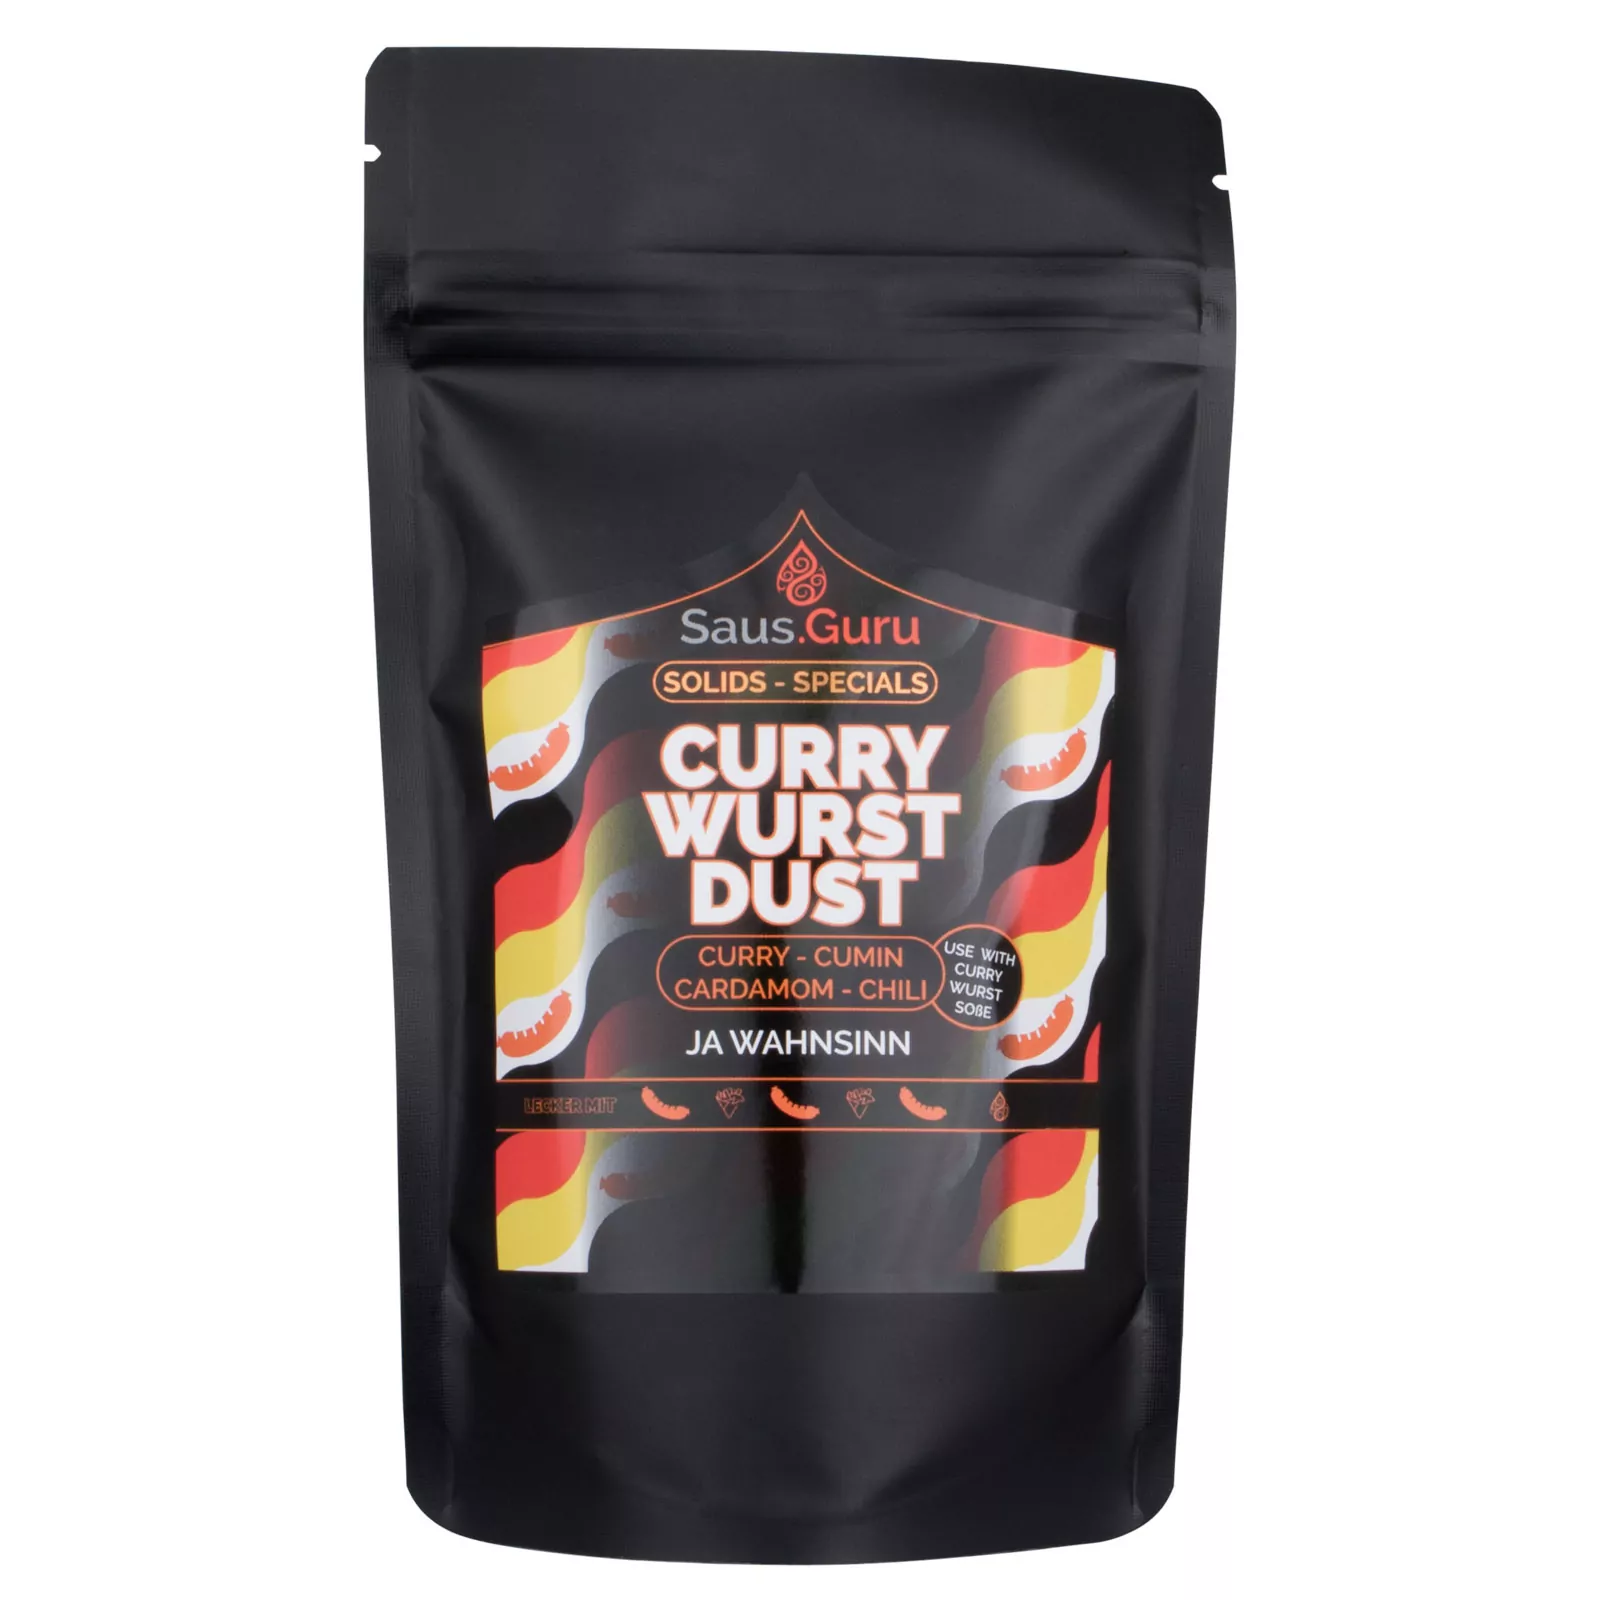 Saus.Guru Currywurst Dust - Spice Mix 160G